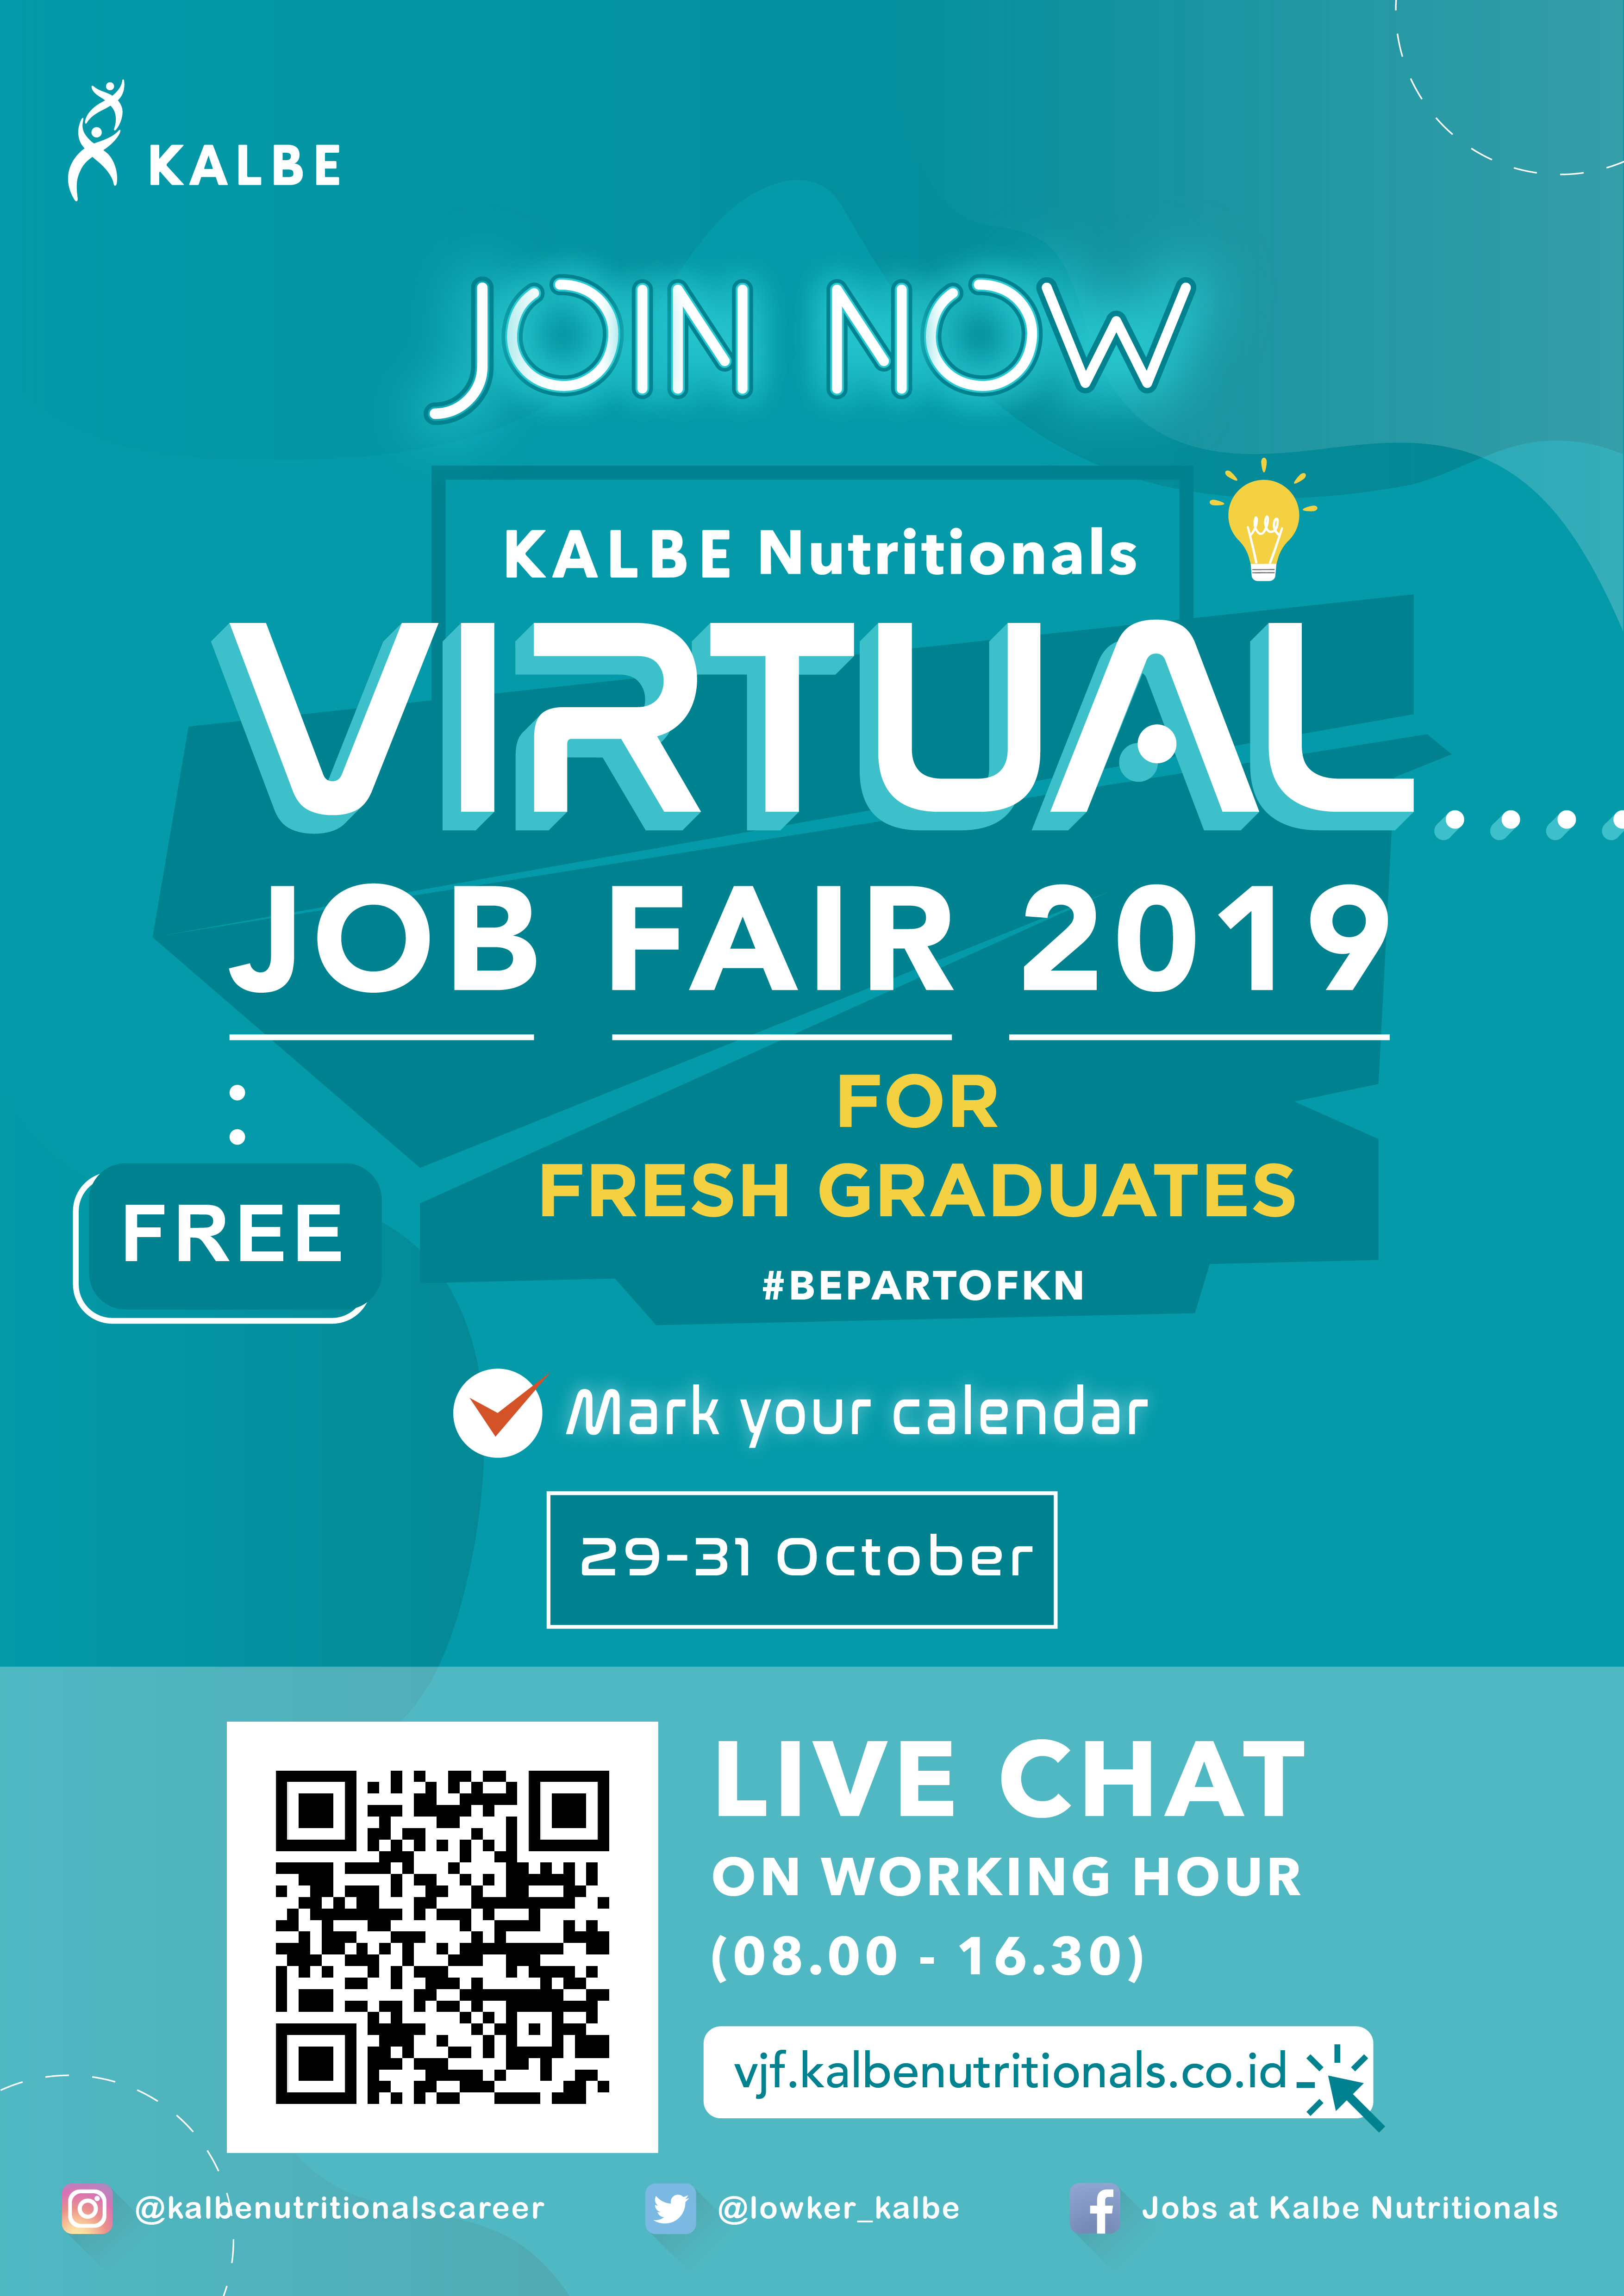 Virtual Jobfair Kalbe Nutritionals for Fresh Graduates - 29-31 Oktober 2019